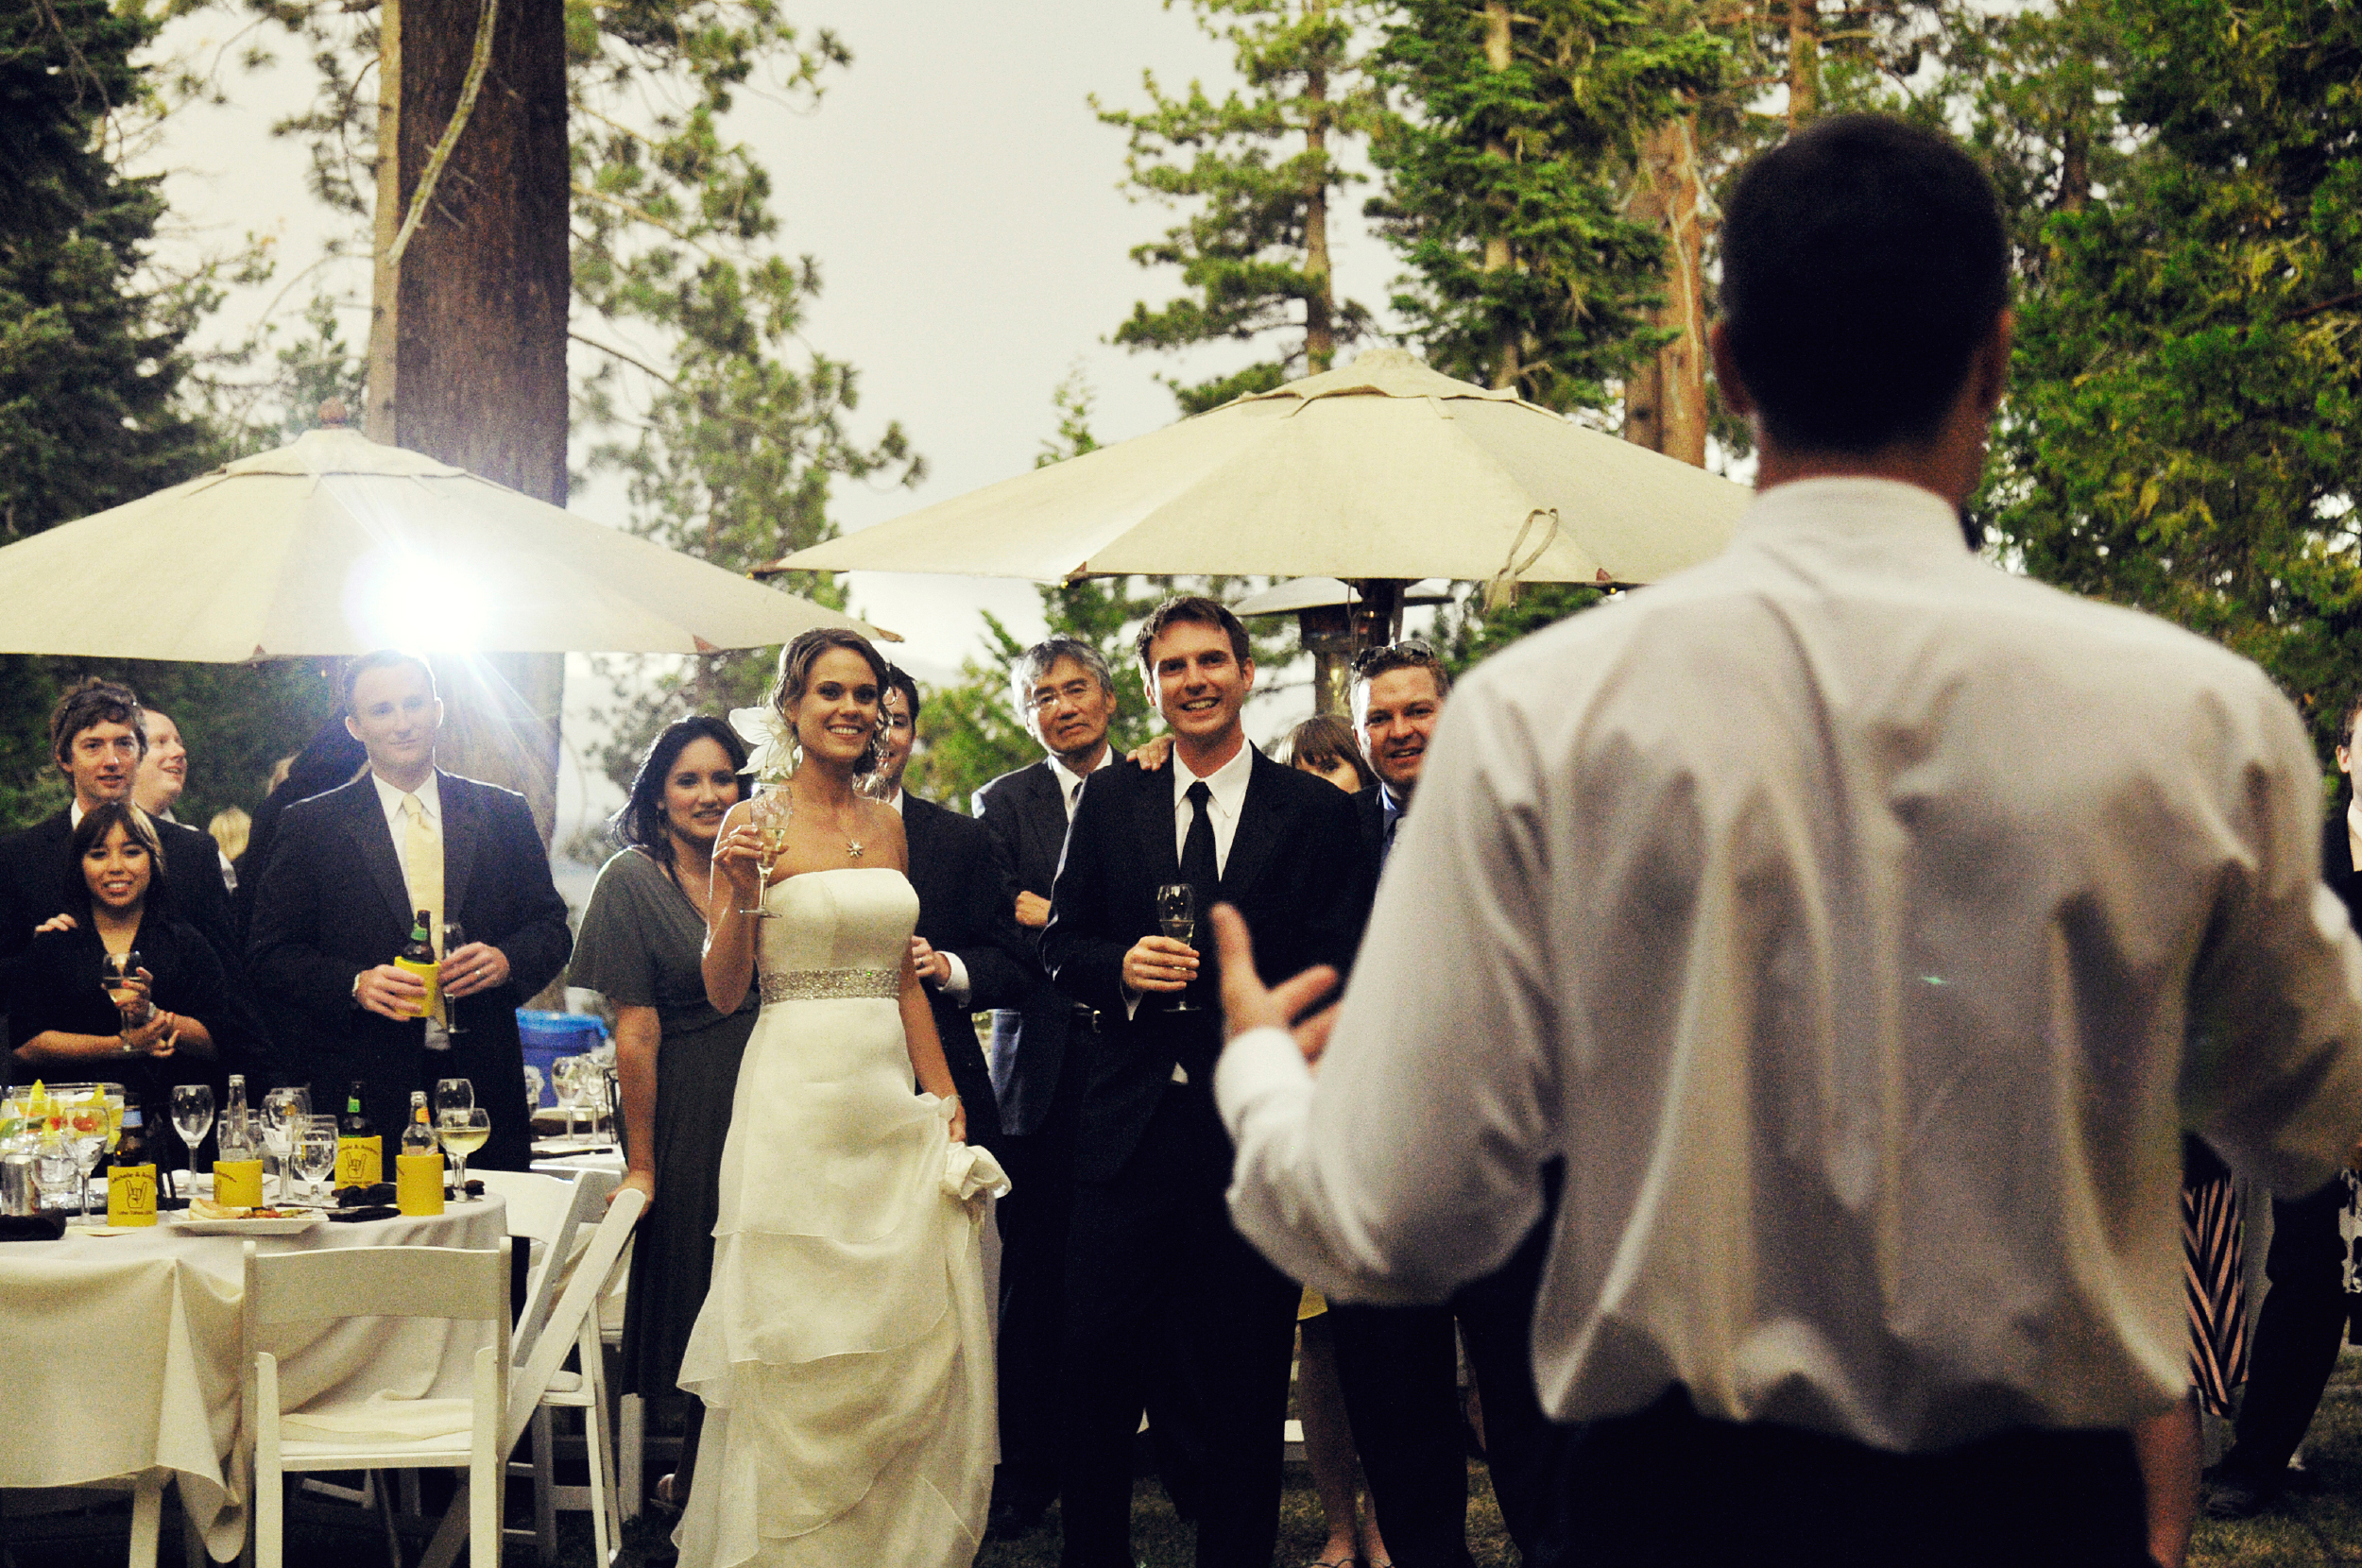 Wedding Reception Lake Tahoe